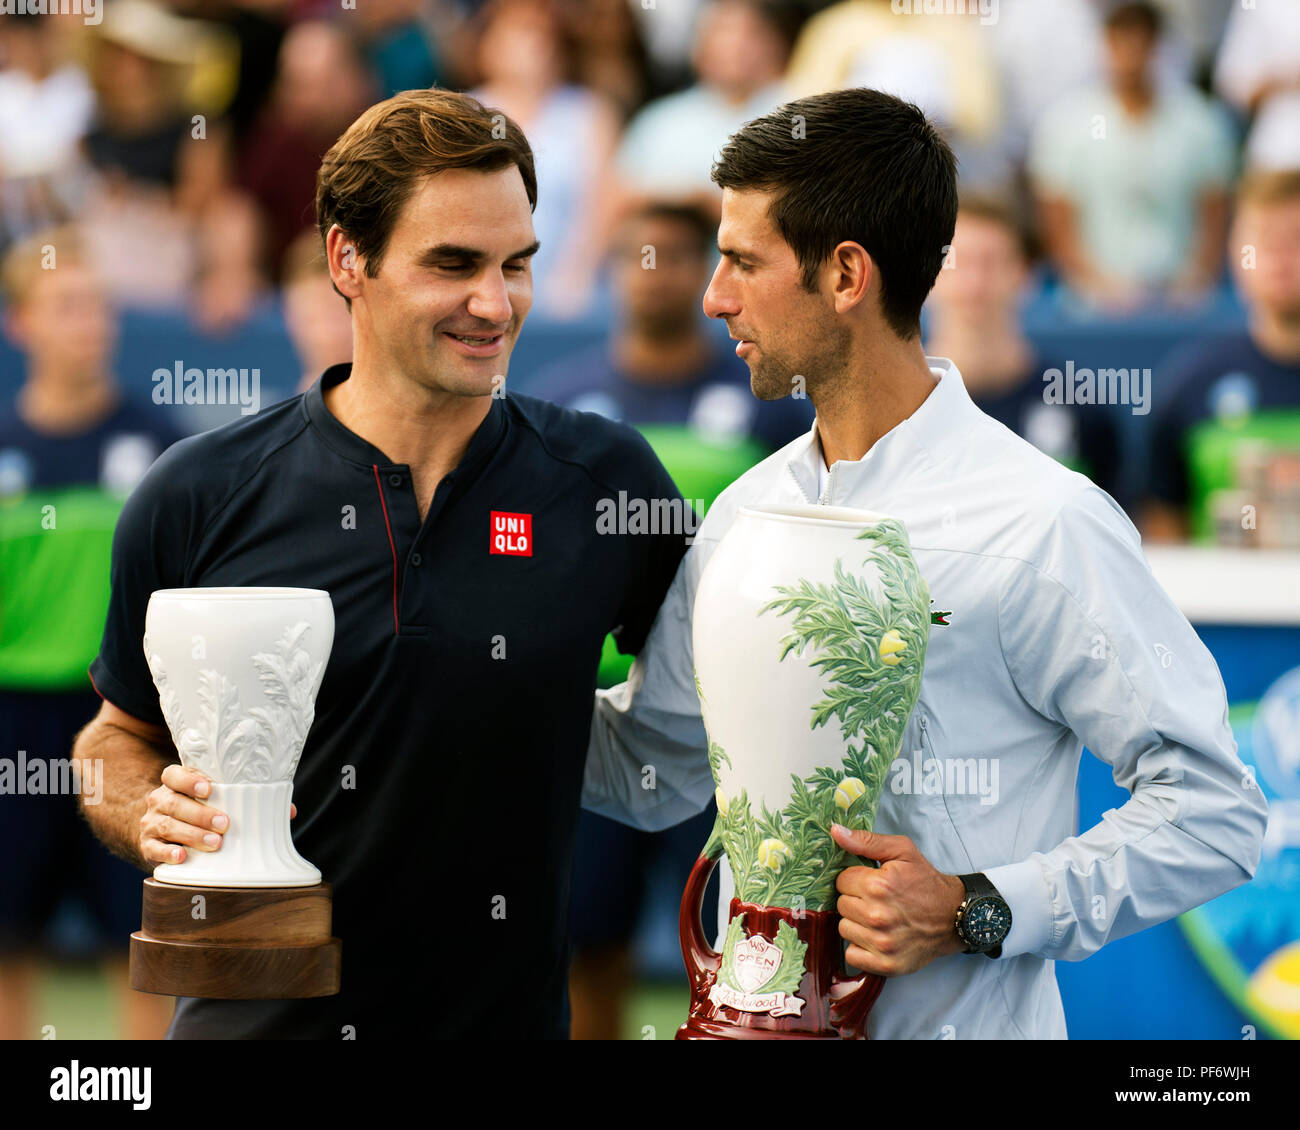 Mason, Ohio, USA. 19 août 2018 : Roger Federer (SUI) et Novak Djokovic (SRB) au cours de la cérémonie de remise des prix au sud de l'Ouest Ouvrir à Mason, Ohio, USA. Brent Clark/Alamy Live News Banque D'Images